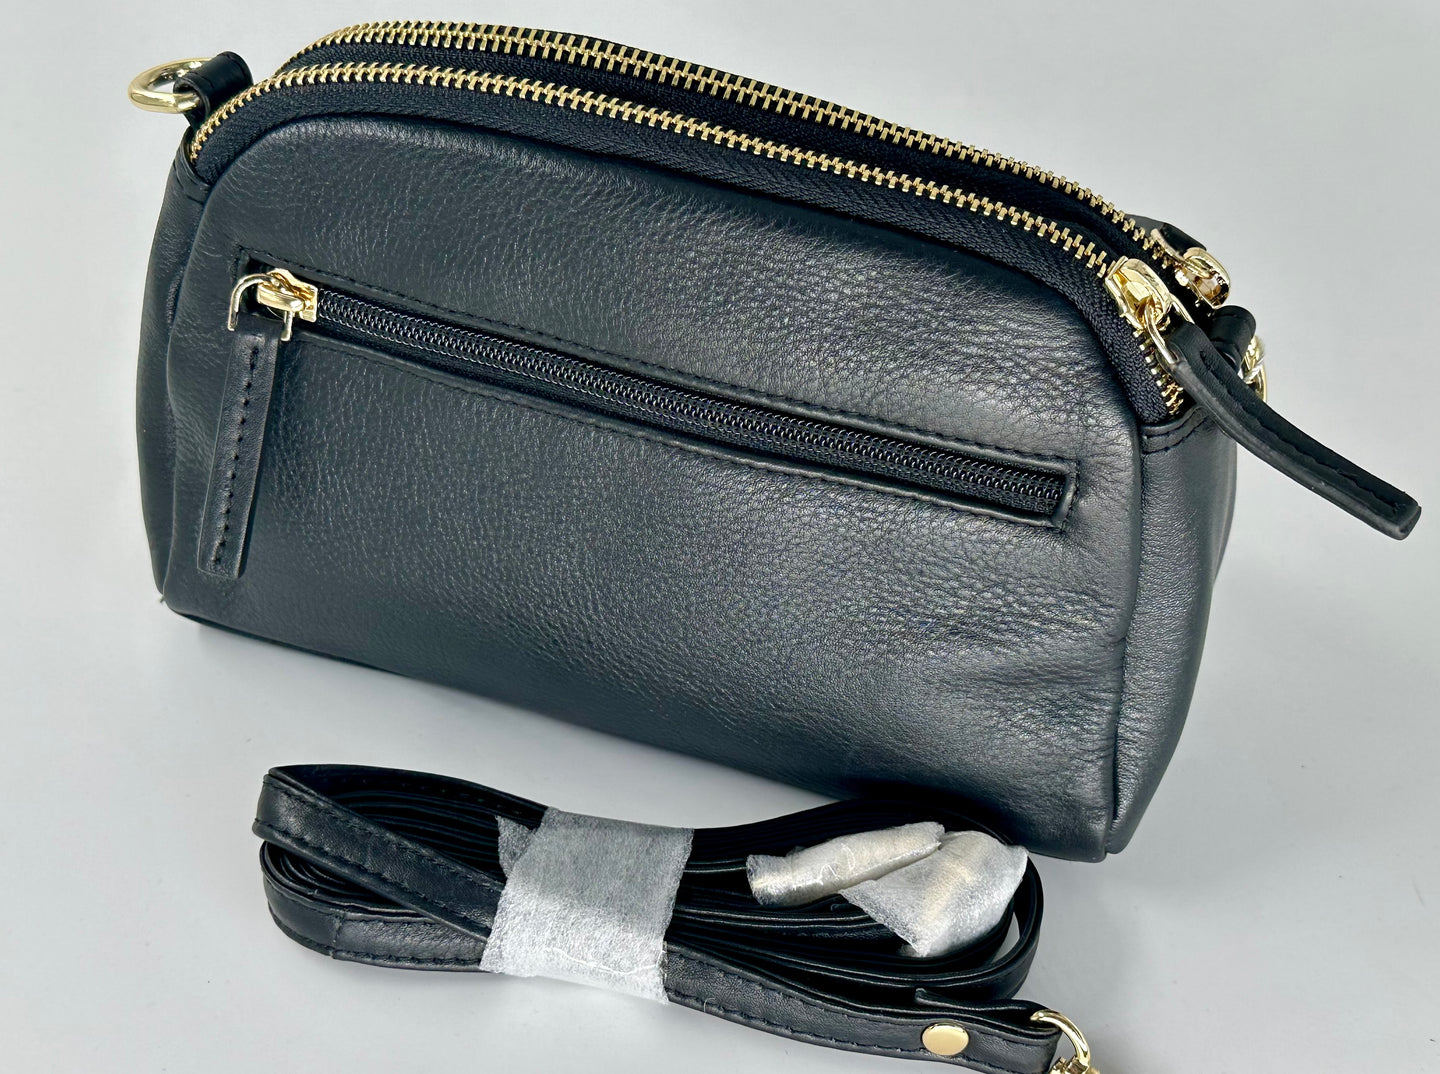 Oval Top Leather Handbag